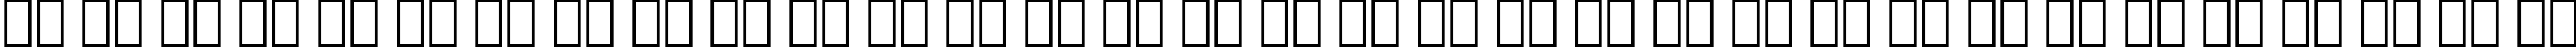 Пример написания русского алфавита шрифтом Swiss 921 BT